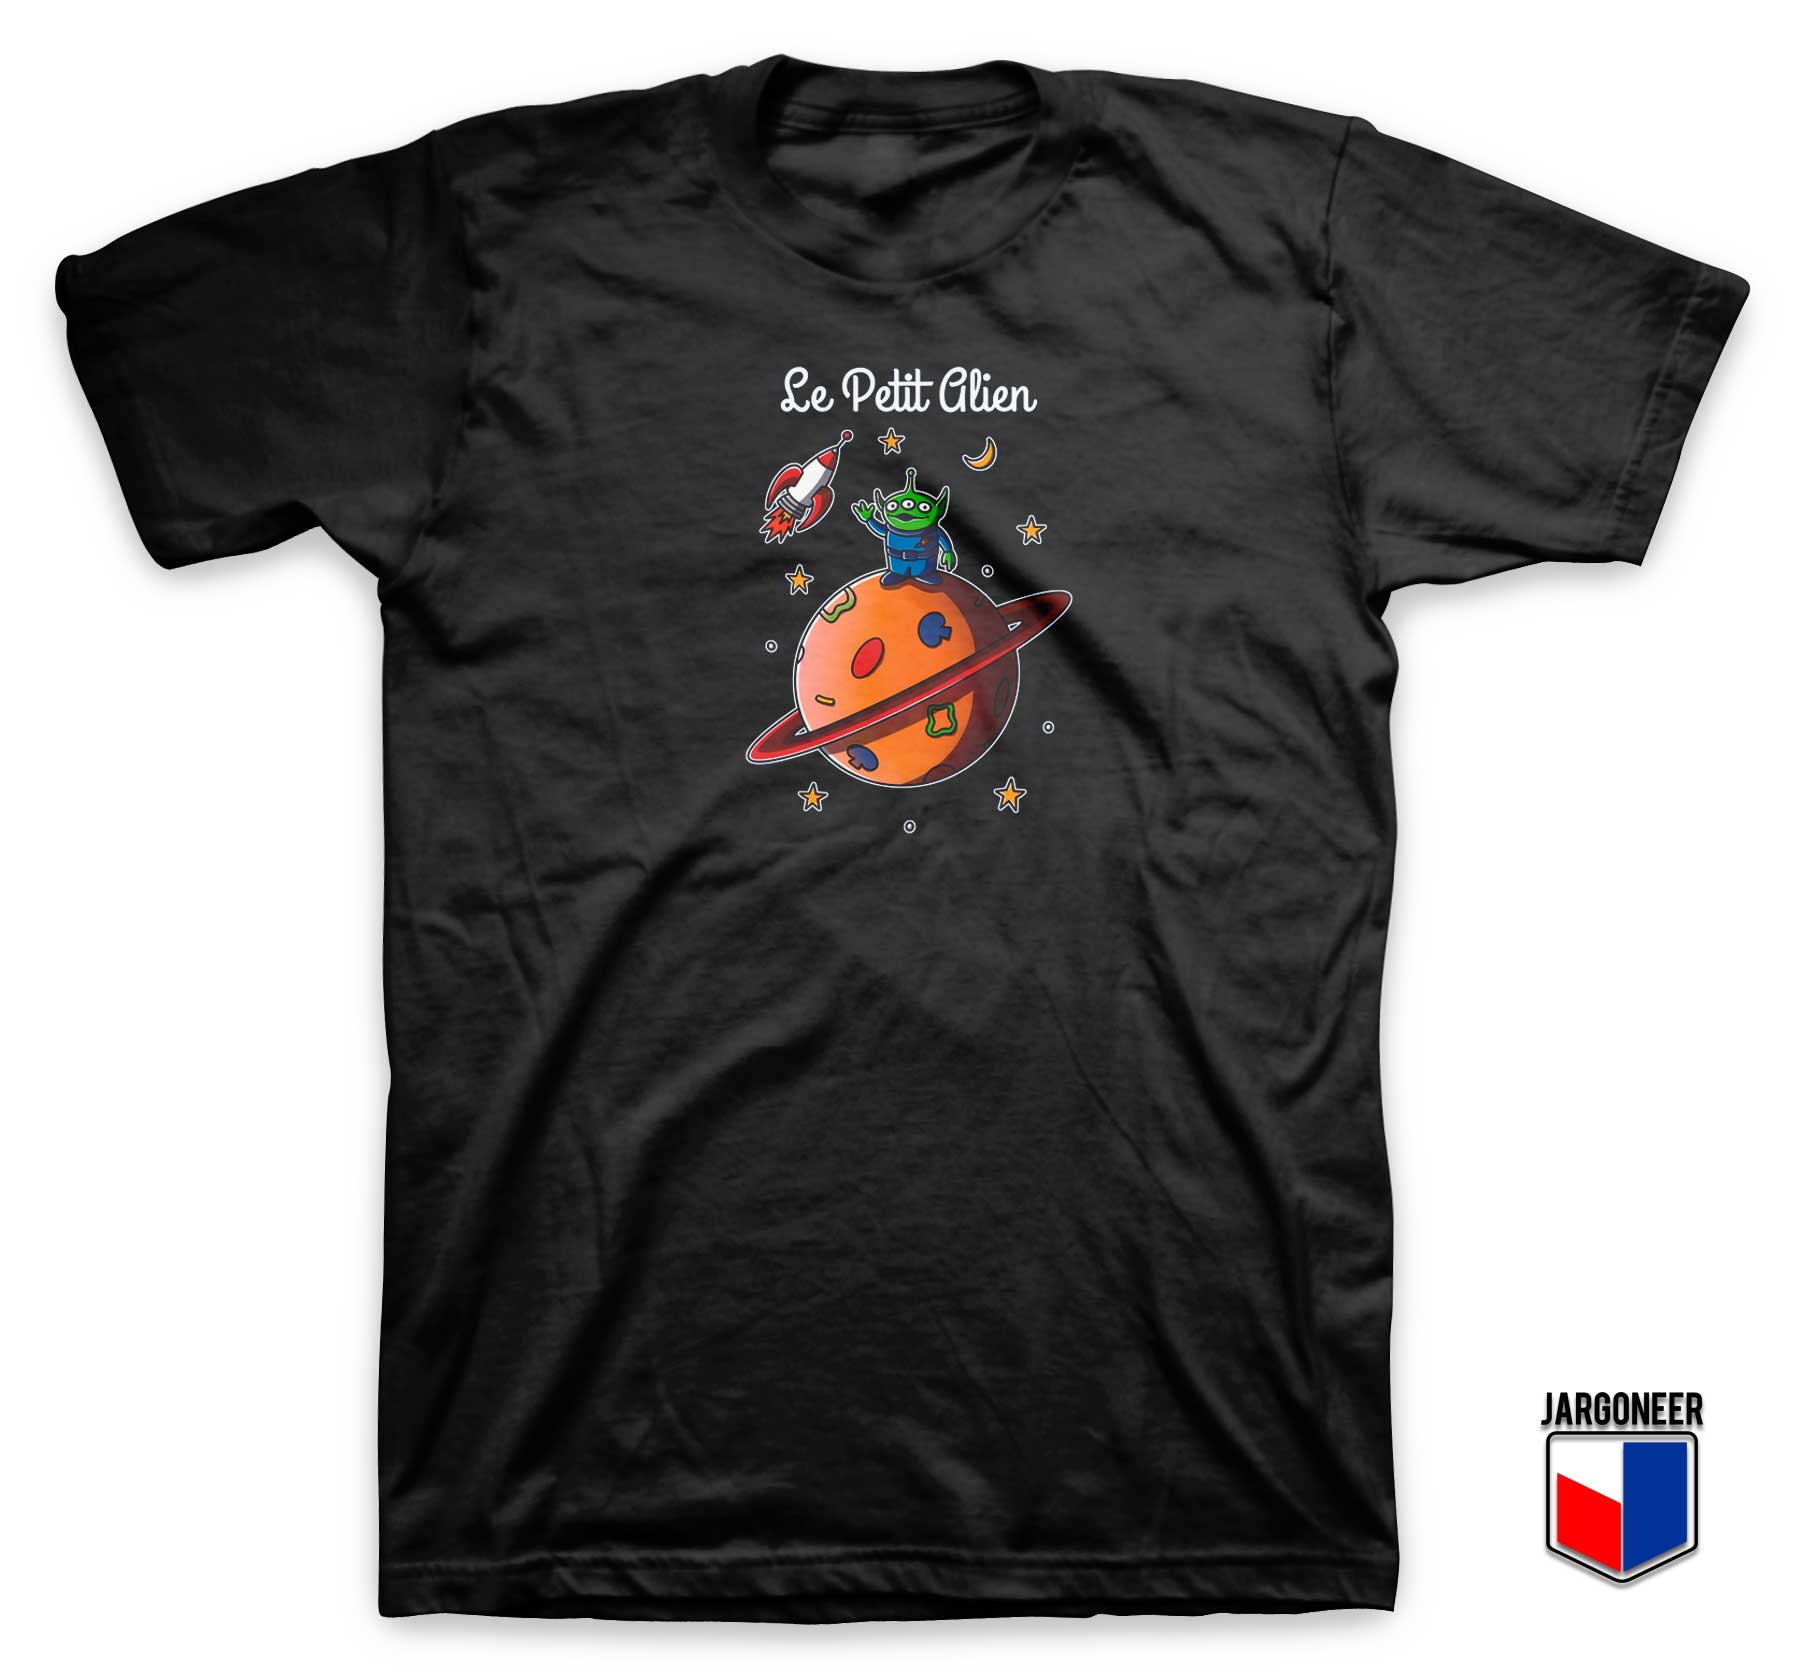 Le Petit Alien T Shirt - Shop Unique Graphic Cool Shirt Designs